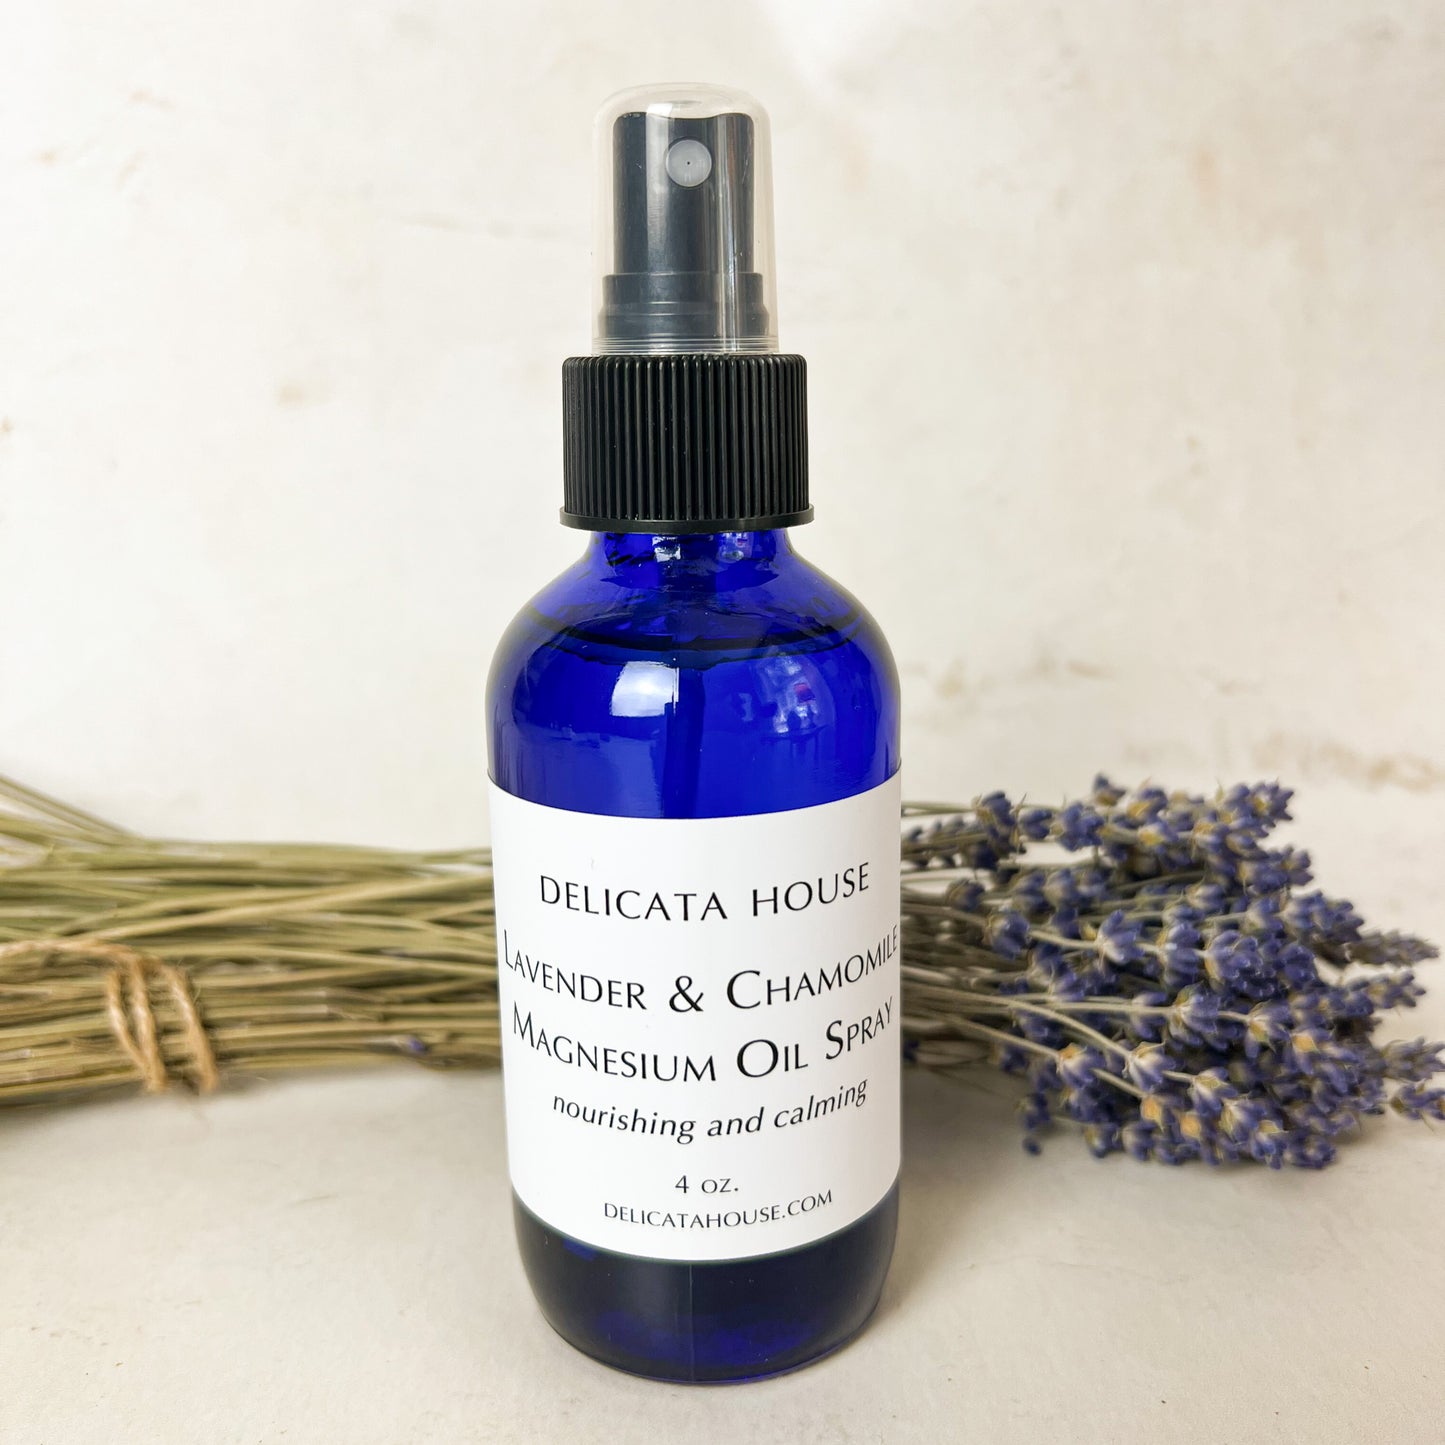 Lavender & Chamomile Magnesium Oil Spray - Magnesium Spray - Natural Sleep Aid